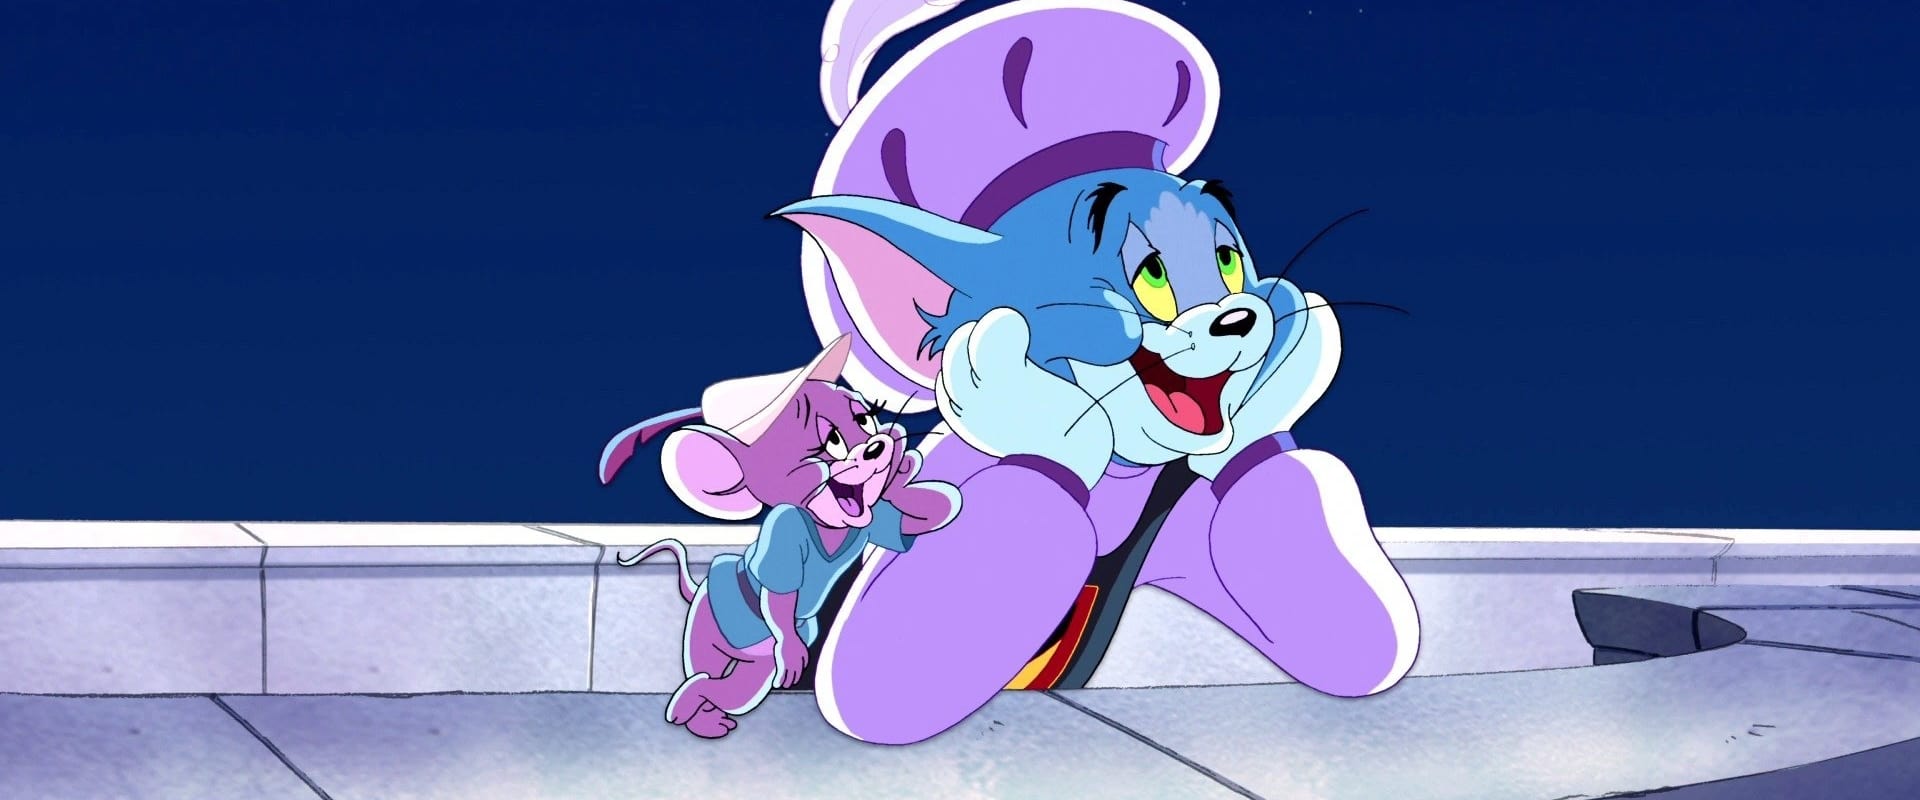 Tom y Jerry: Robin Hood y el ratón de Sherwood